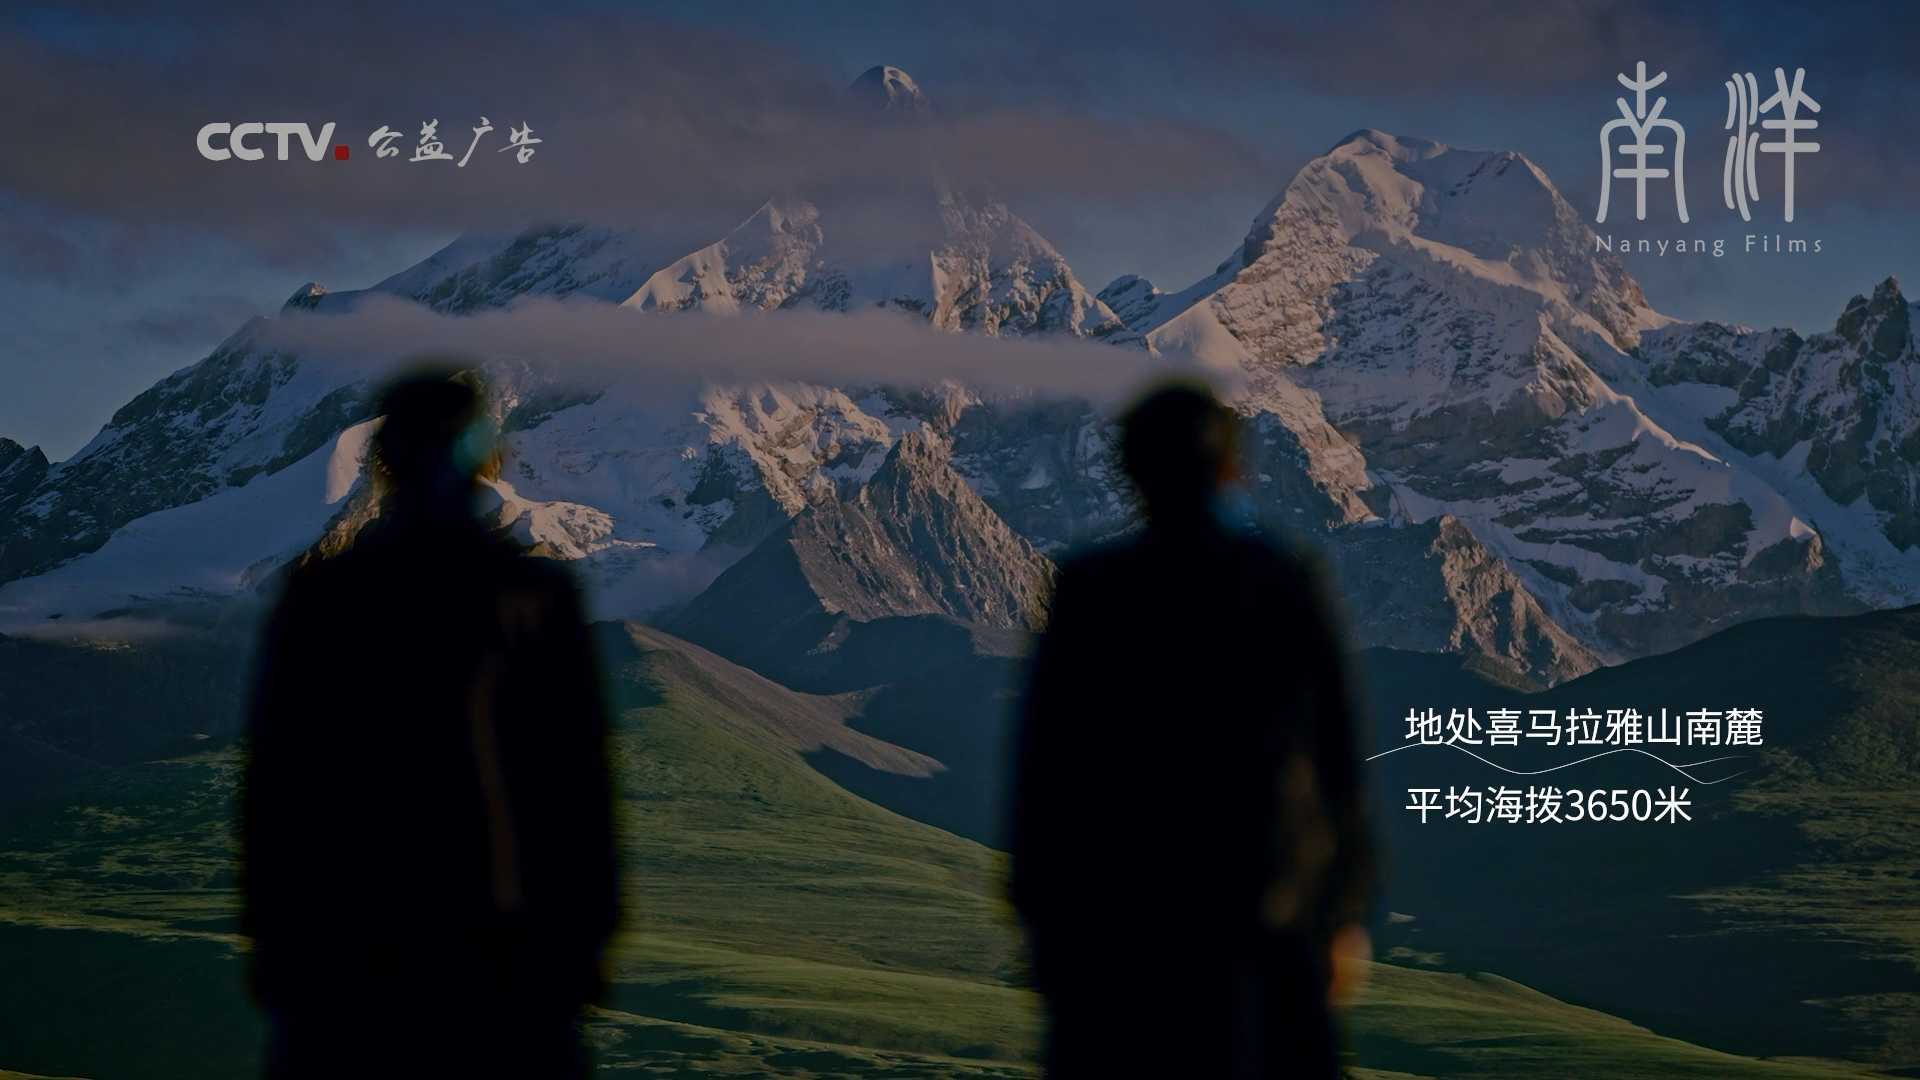 CCTV公益传播|新时代新西藏 |《家是玉麦 国是中国》公益广告